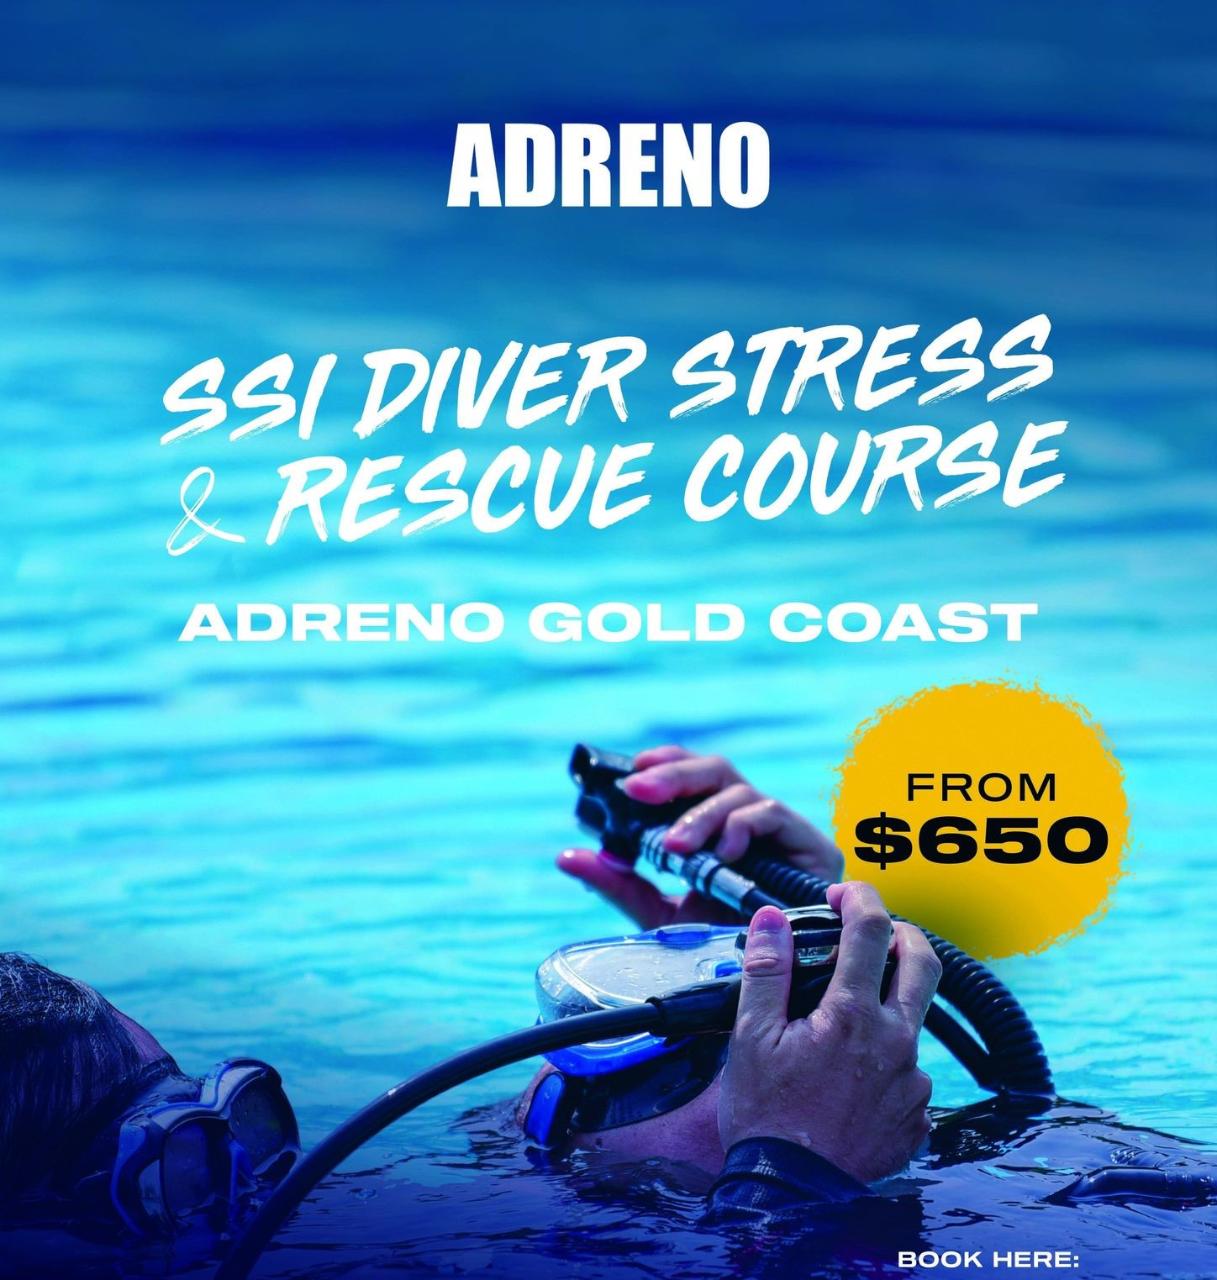 SSI Diver Stress and Rescue Course - Adreno Gold Coast